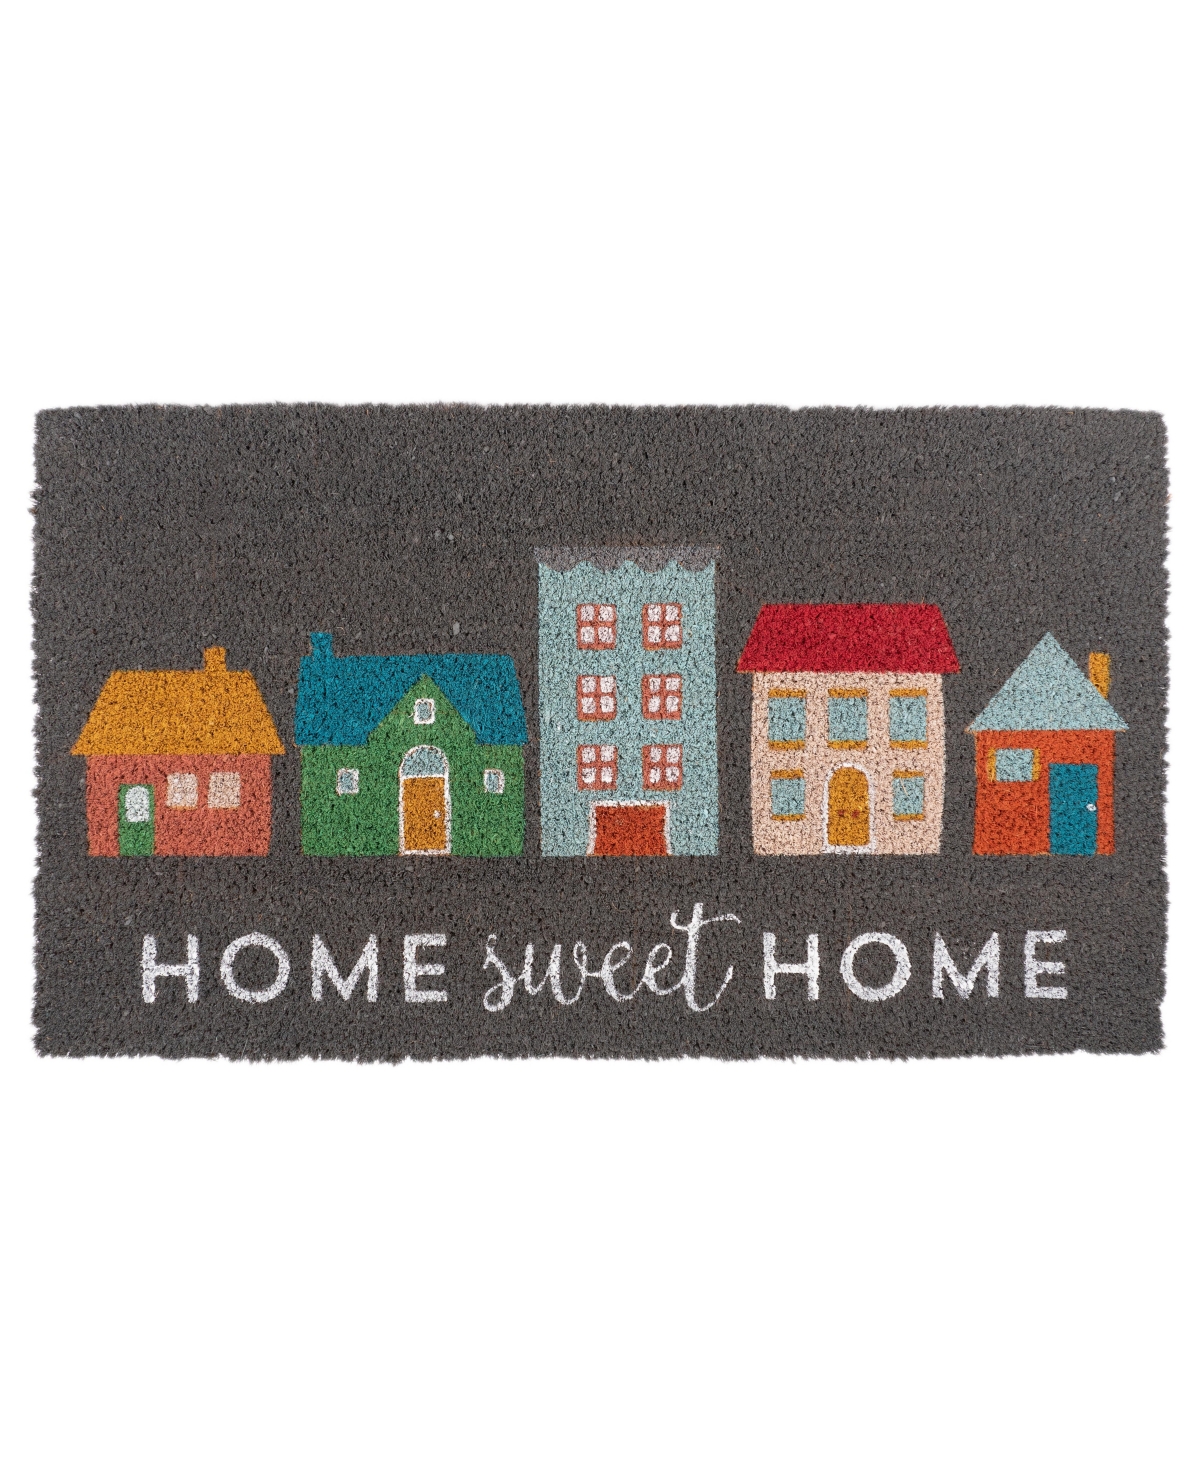 Coir Doormat, Home Sweet Home - Beige